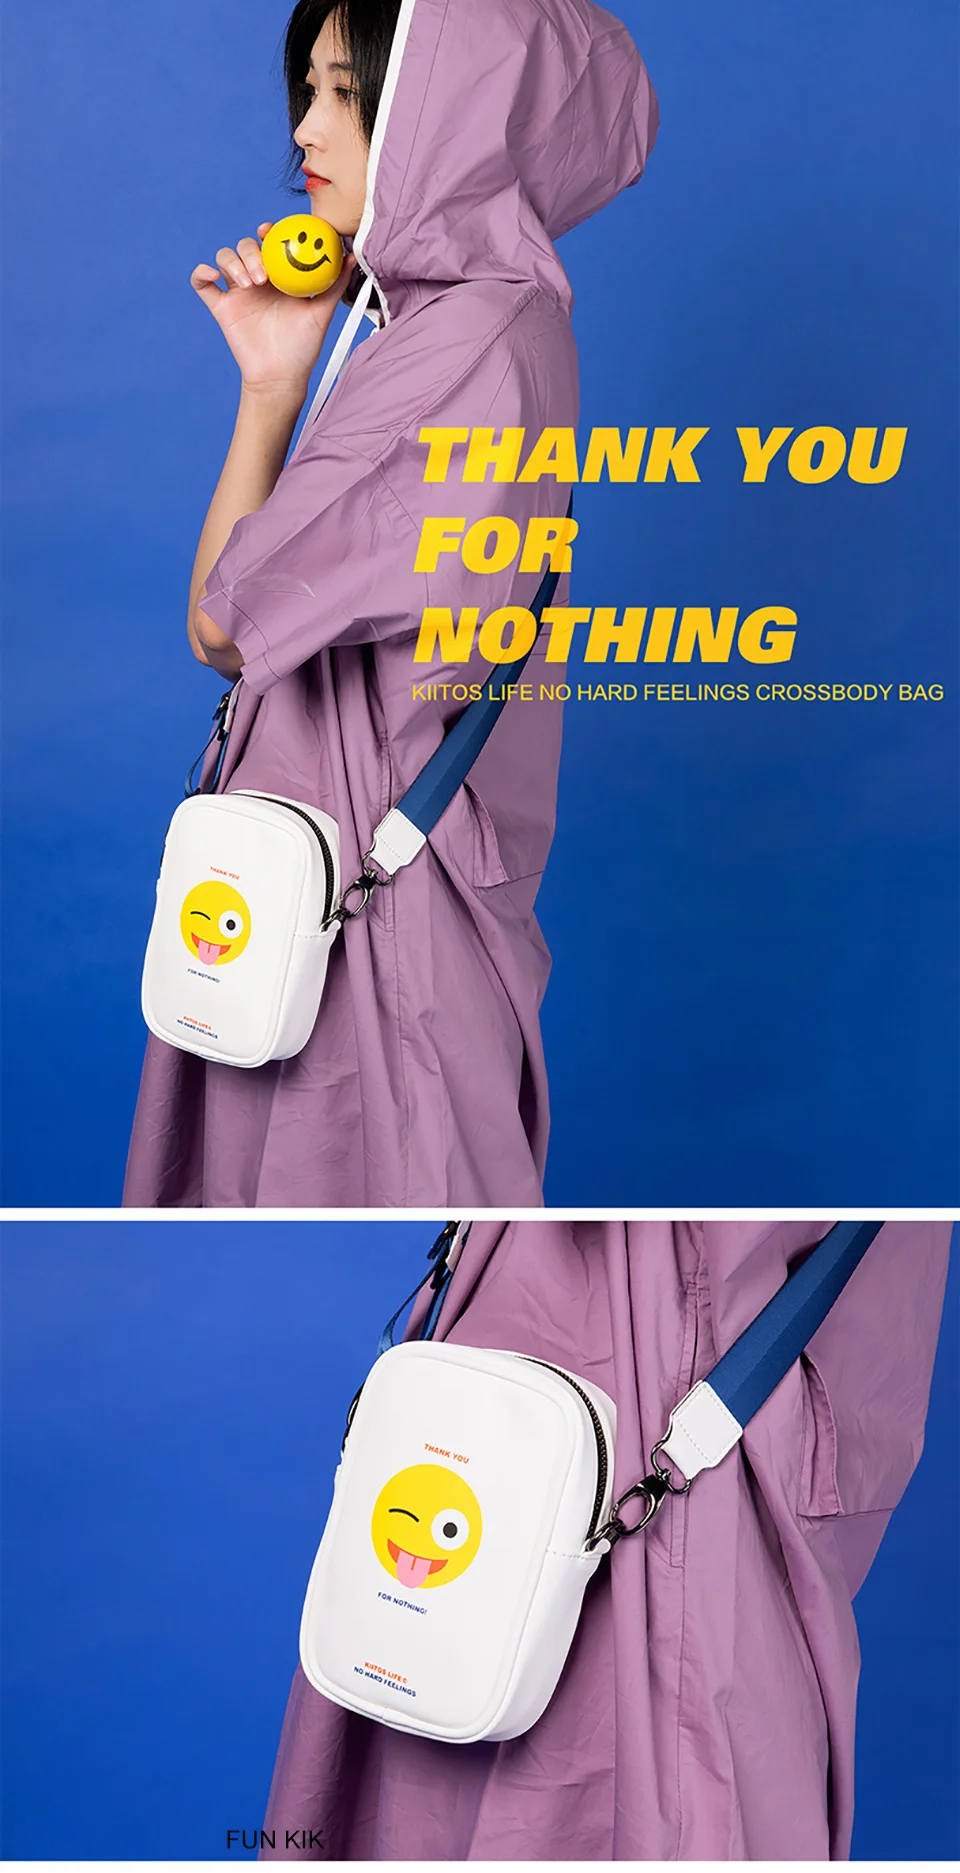 Kiitos Life прямоугольные мини-сумки через плечо из искусственной кожи для девочек, дизайн, серия 2(FUN KIK